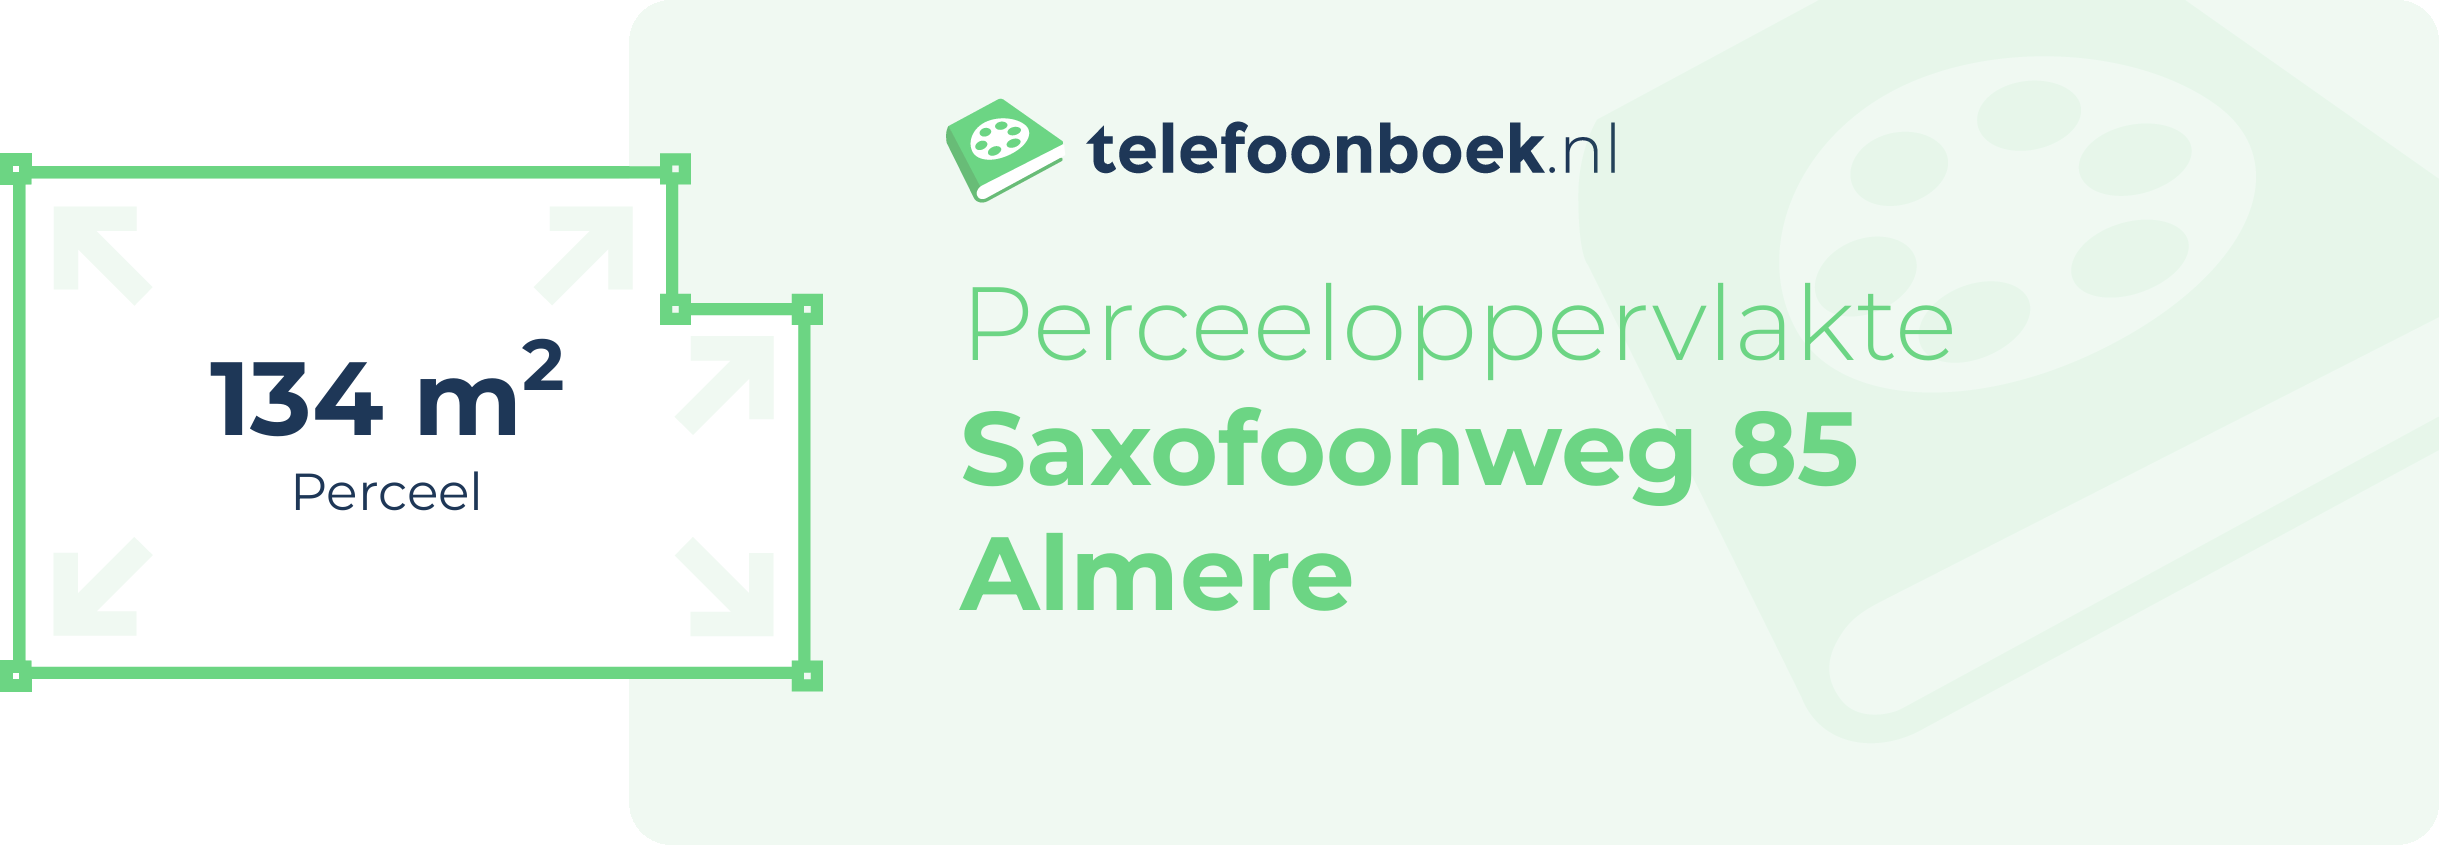 Perceeloppervlakte Saxofoonweg 85 Almere